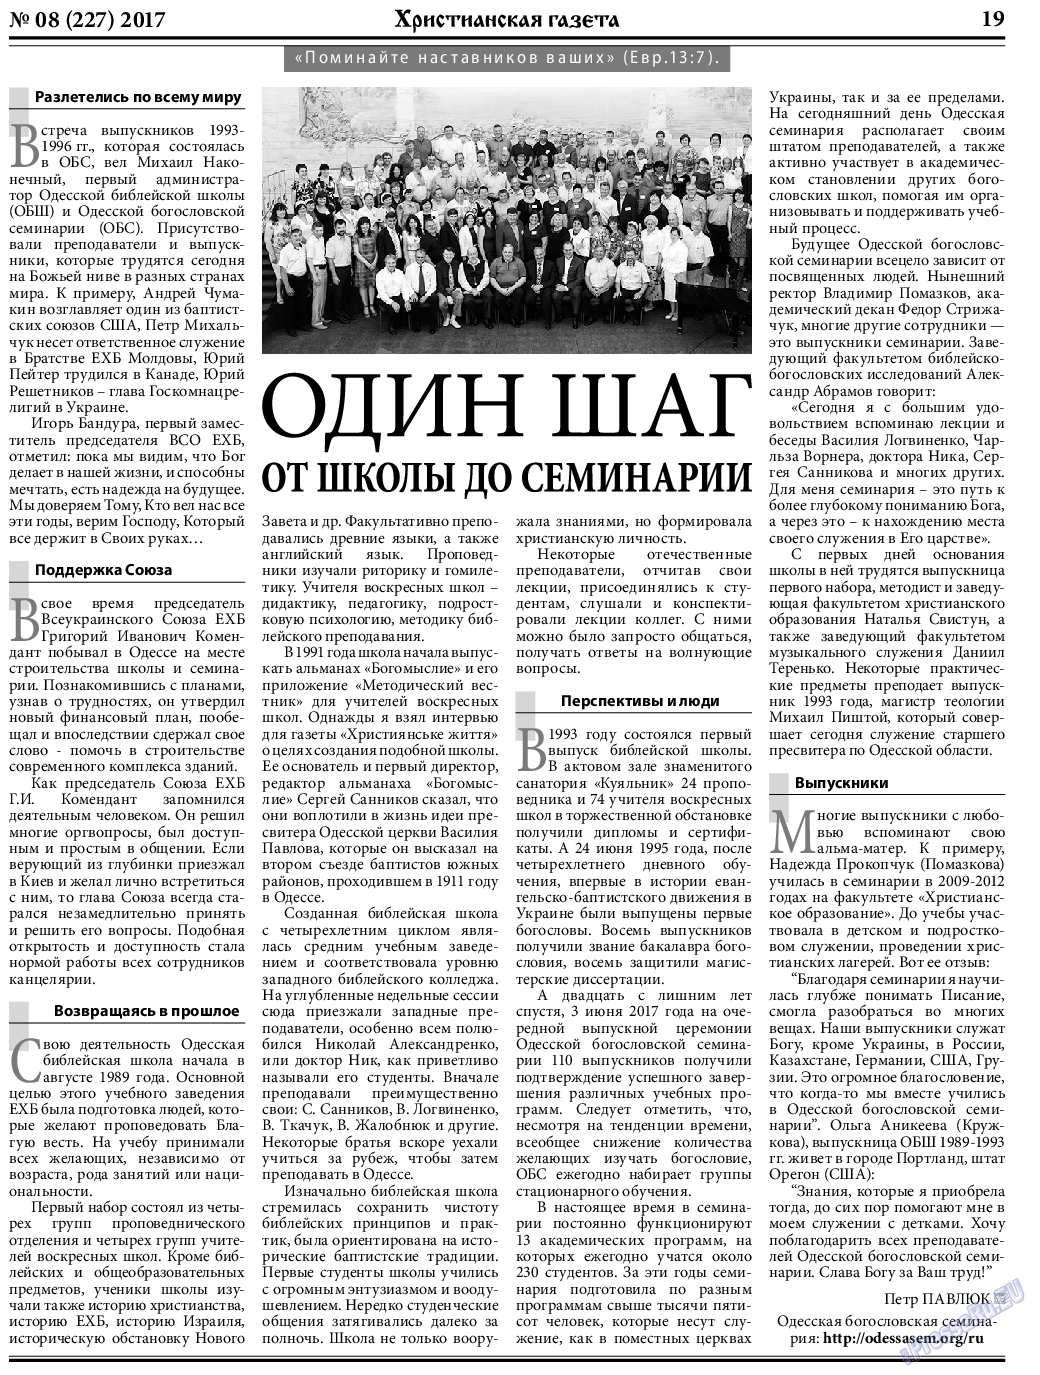 Христианская газета, газета. 2017 №8 стр.19